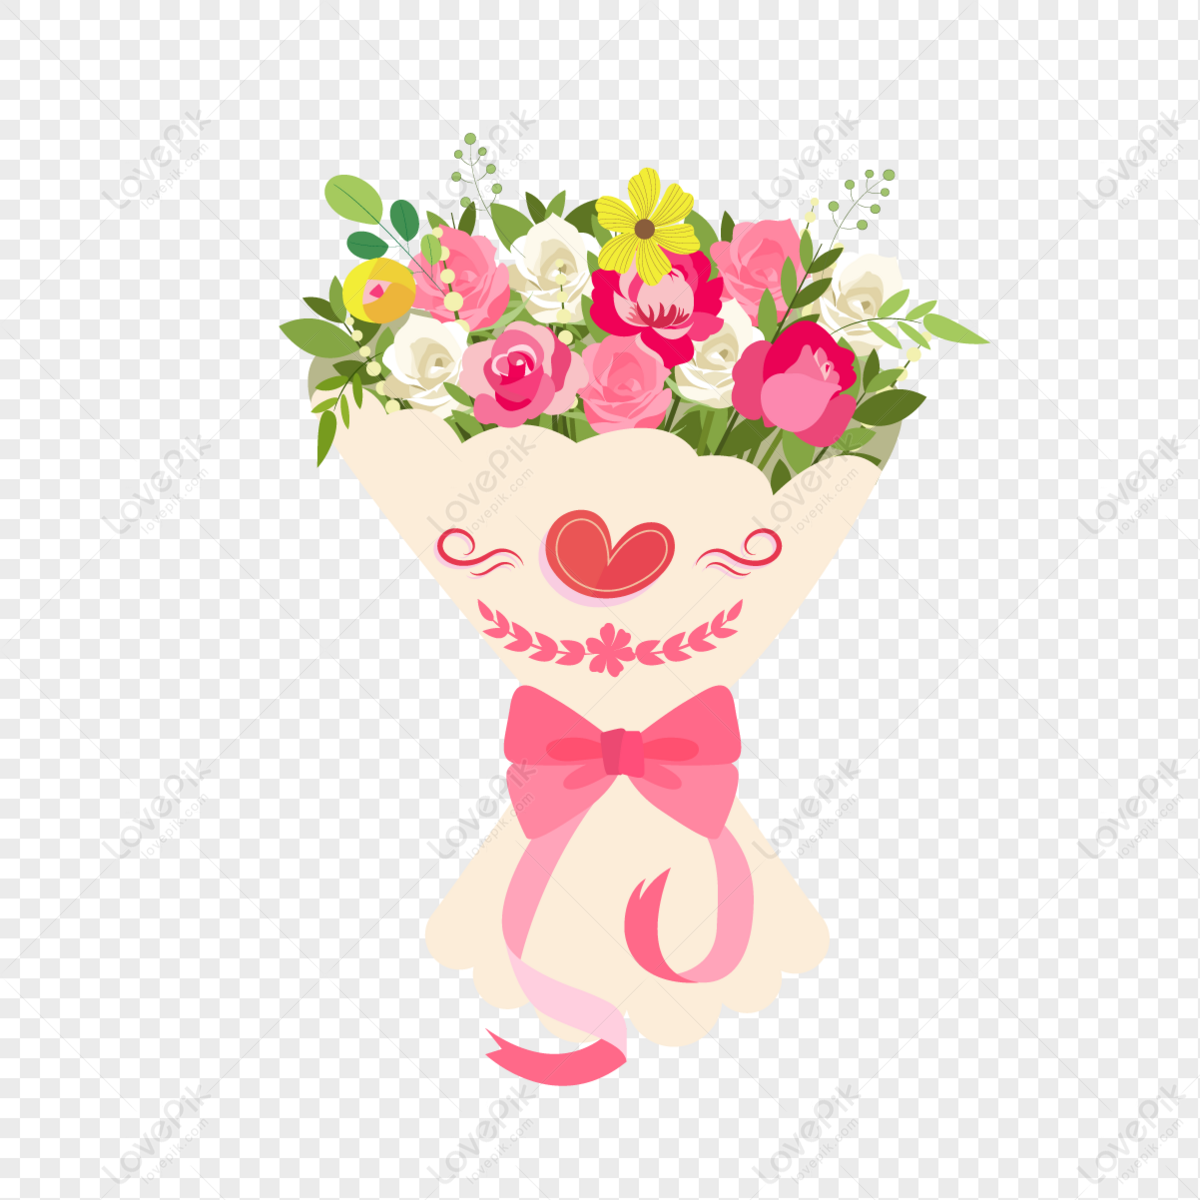 Valentine Flowers là biểu tượng của tình yêu và lòng trắc ẩn. Hình ảnh này sẽ thổi bùng vào bạn một cảm giác lãng mạn và ngọt ngào, kèm theo sự ngưỡng mộ về vẻ đẹp hoa lá của Valentine. Xem hình ảnh này đã lá thơm với mùi hương tình yêu và sự nhẹ nhàng của những cánh hoa.